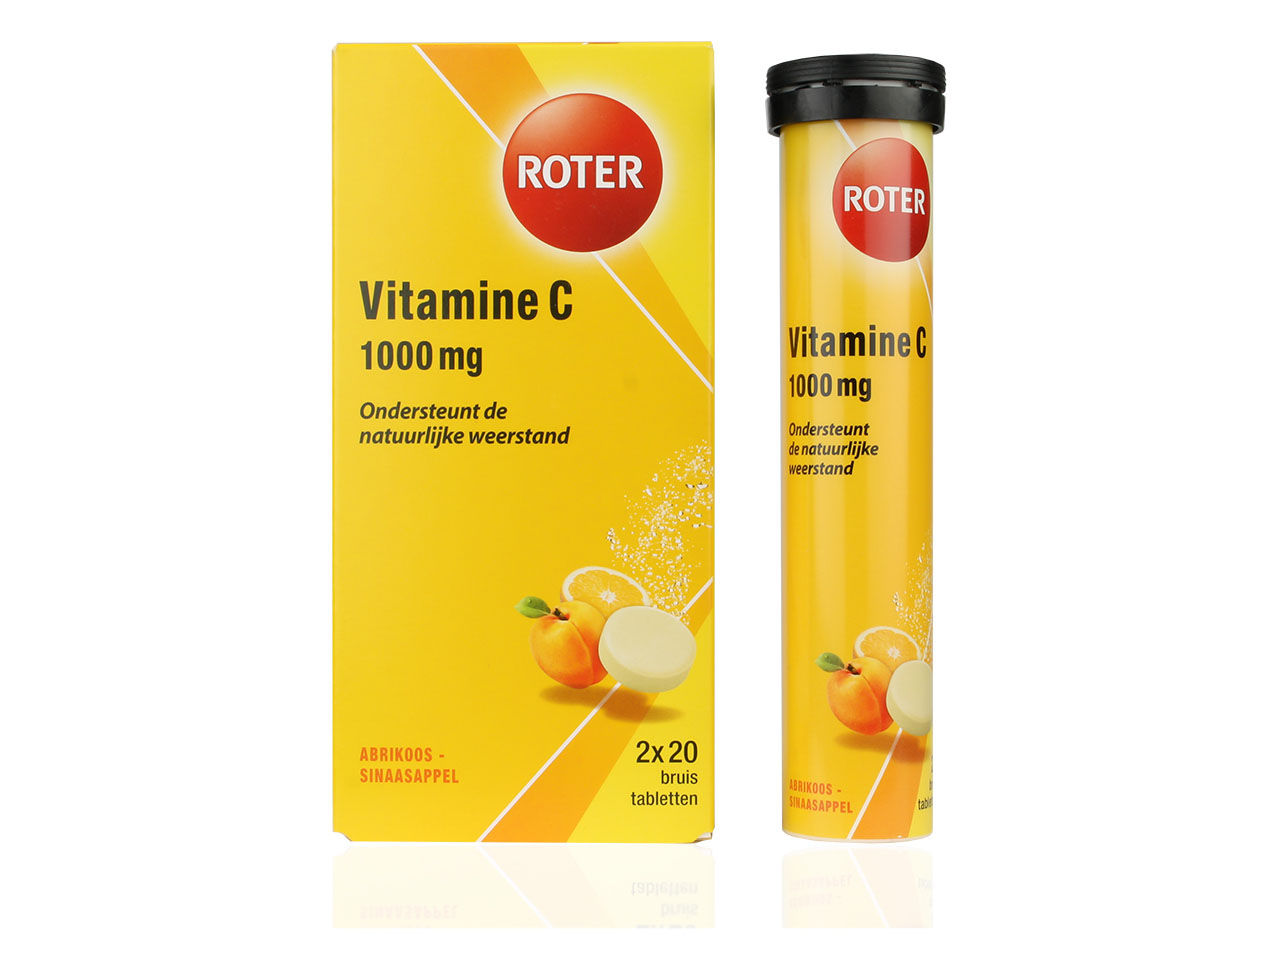 Lichaam nietig Schadelijk Roter Vitamine C Bruistablet 1000mg Duopack